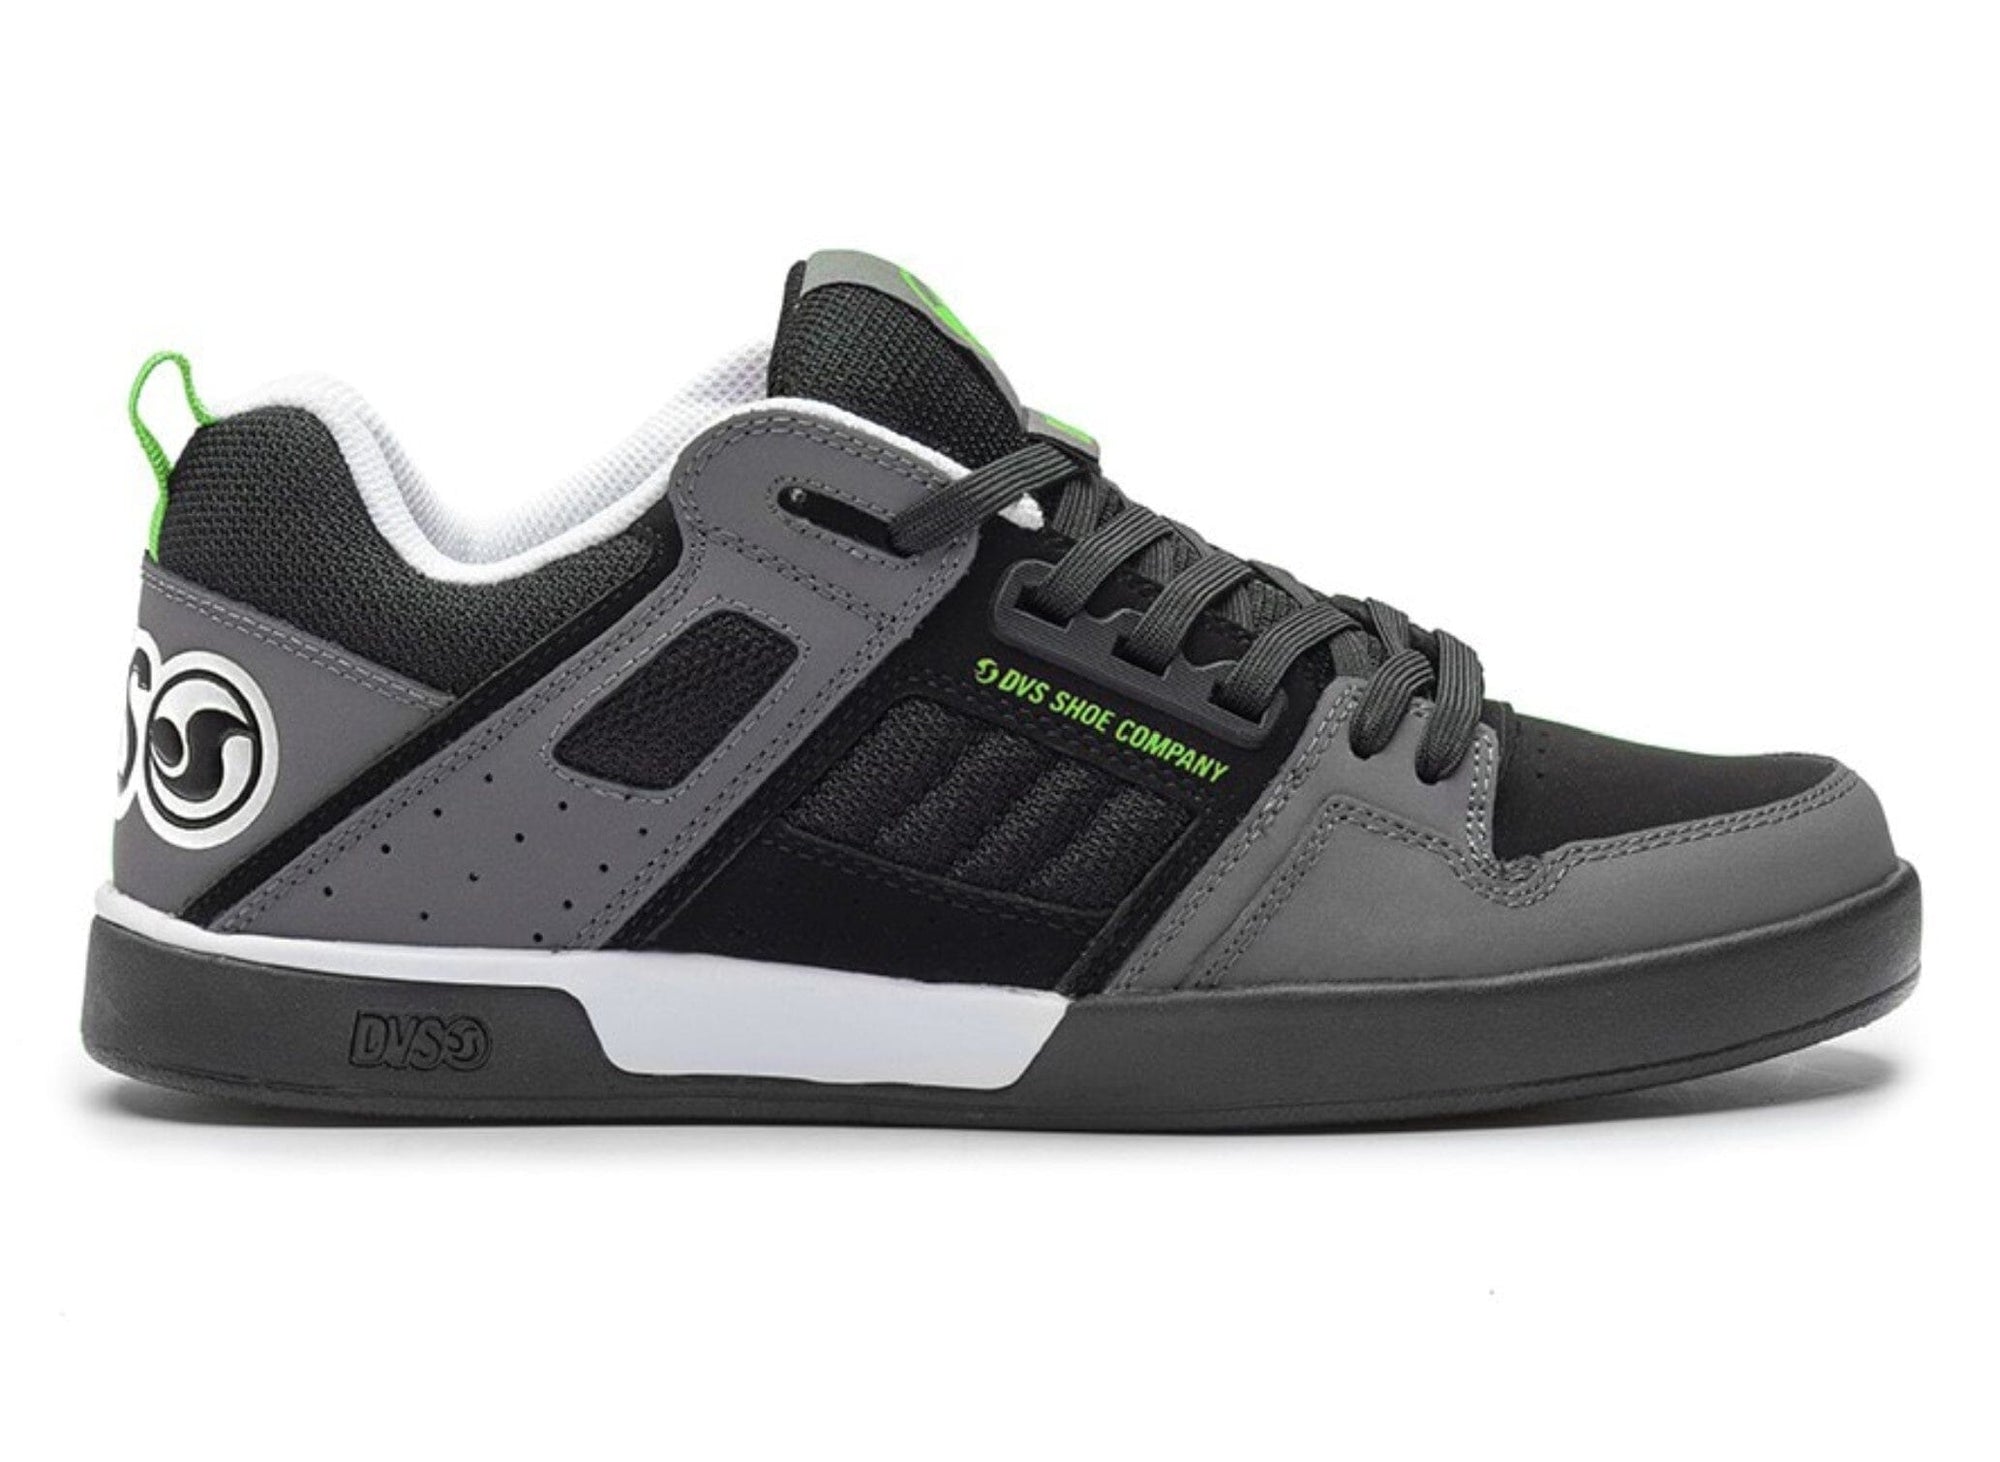 DVS Comanche 2.0+ Shoes Black/Charcoal/Lime Nubuck Men's Skate Shoes DVS 